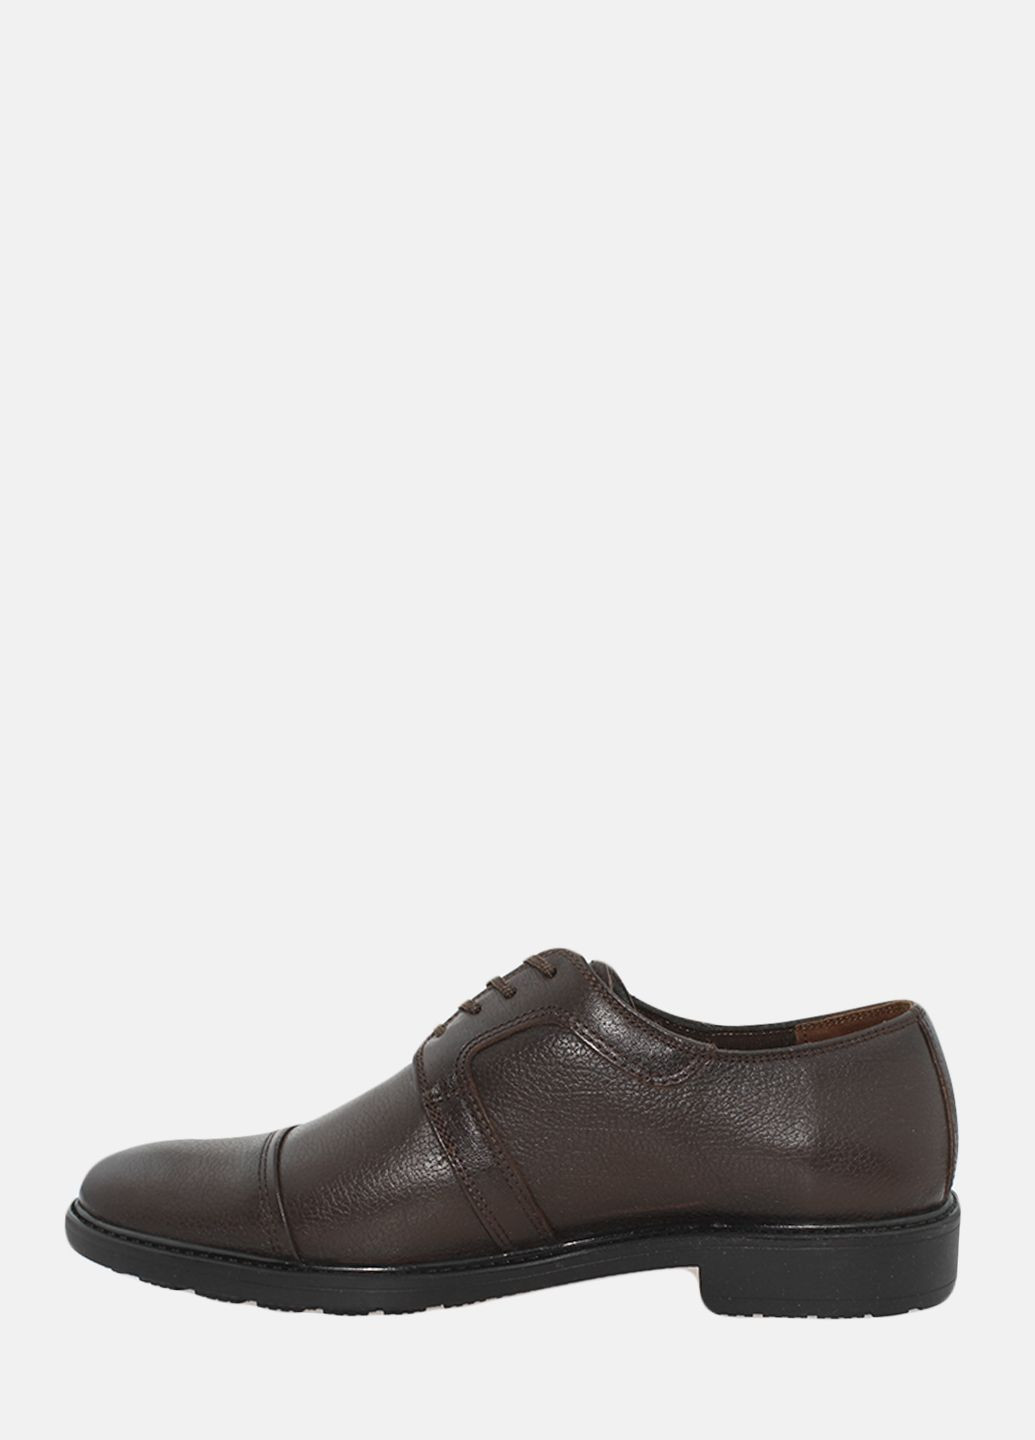 Коричневые туфли g1025.02 коричневый Goover